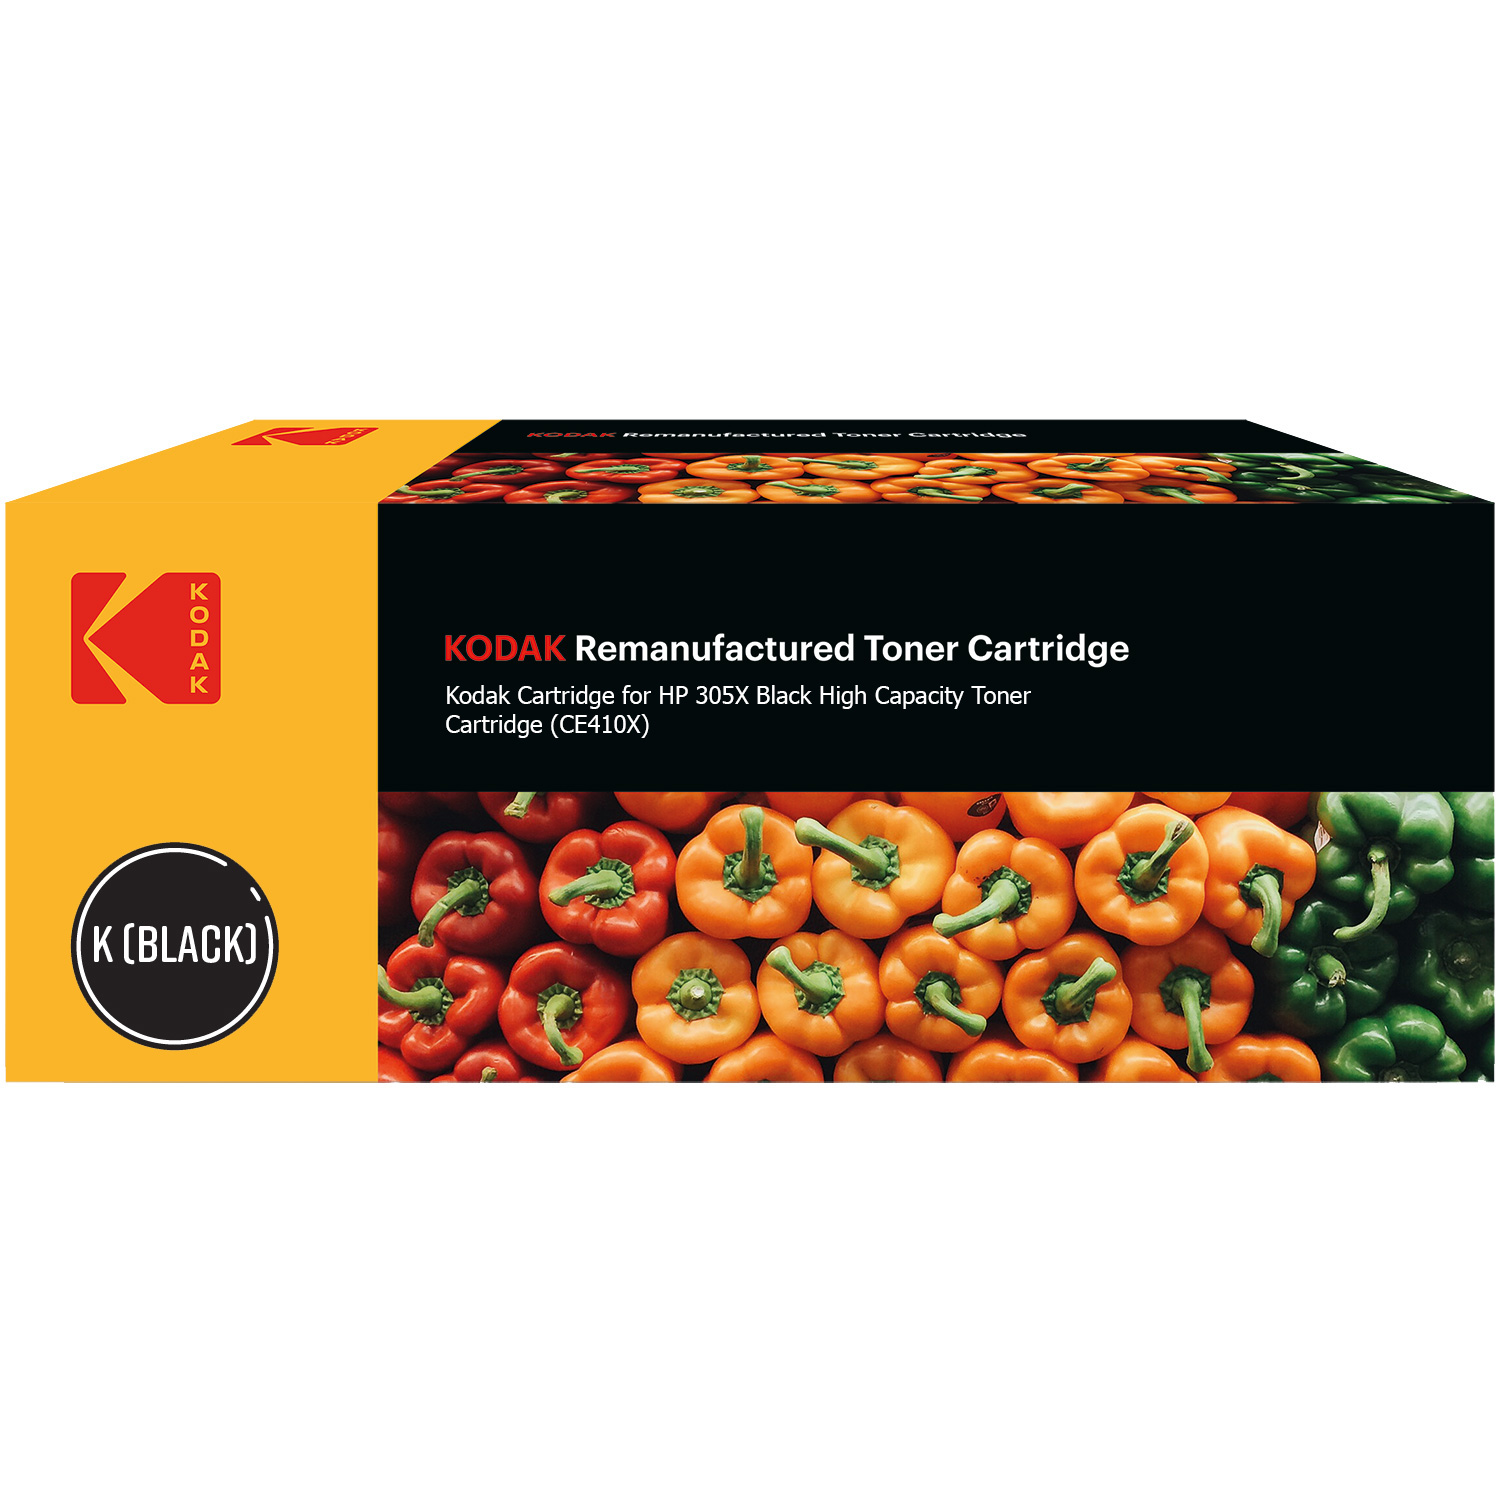 Kodak Ultimate HP 305X Black High Capacity Toner Cartridge (CE410X) (Kodak KODCE410X)